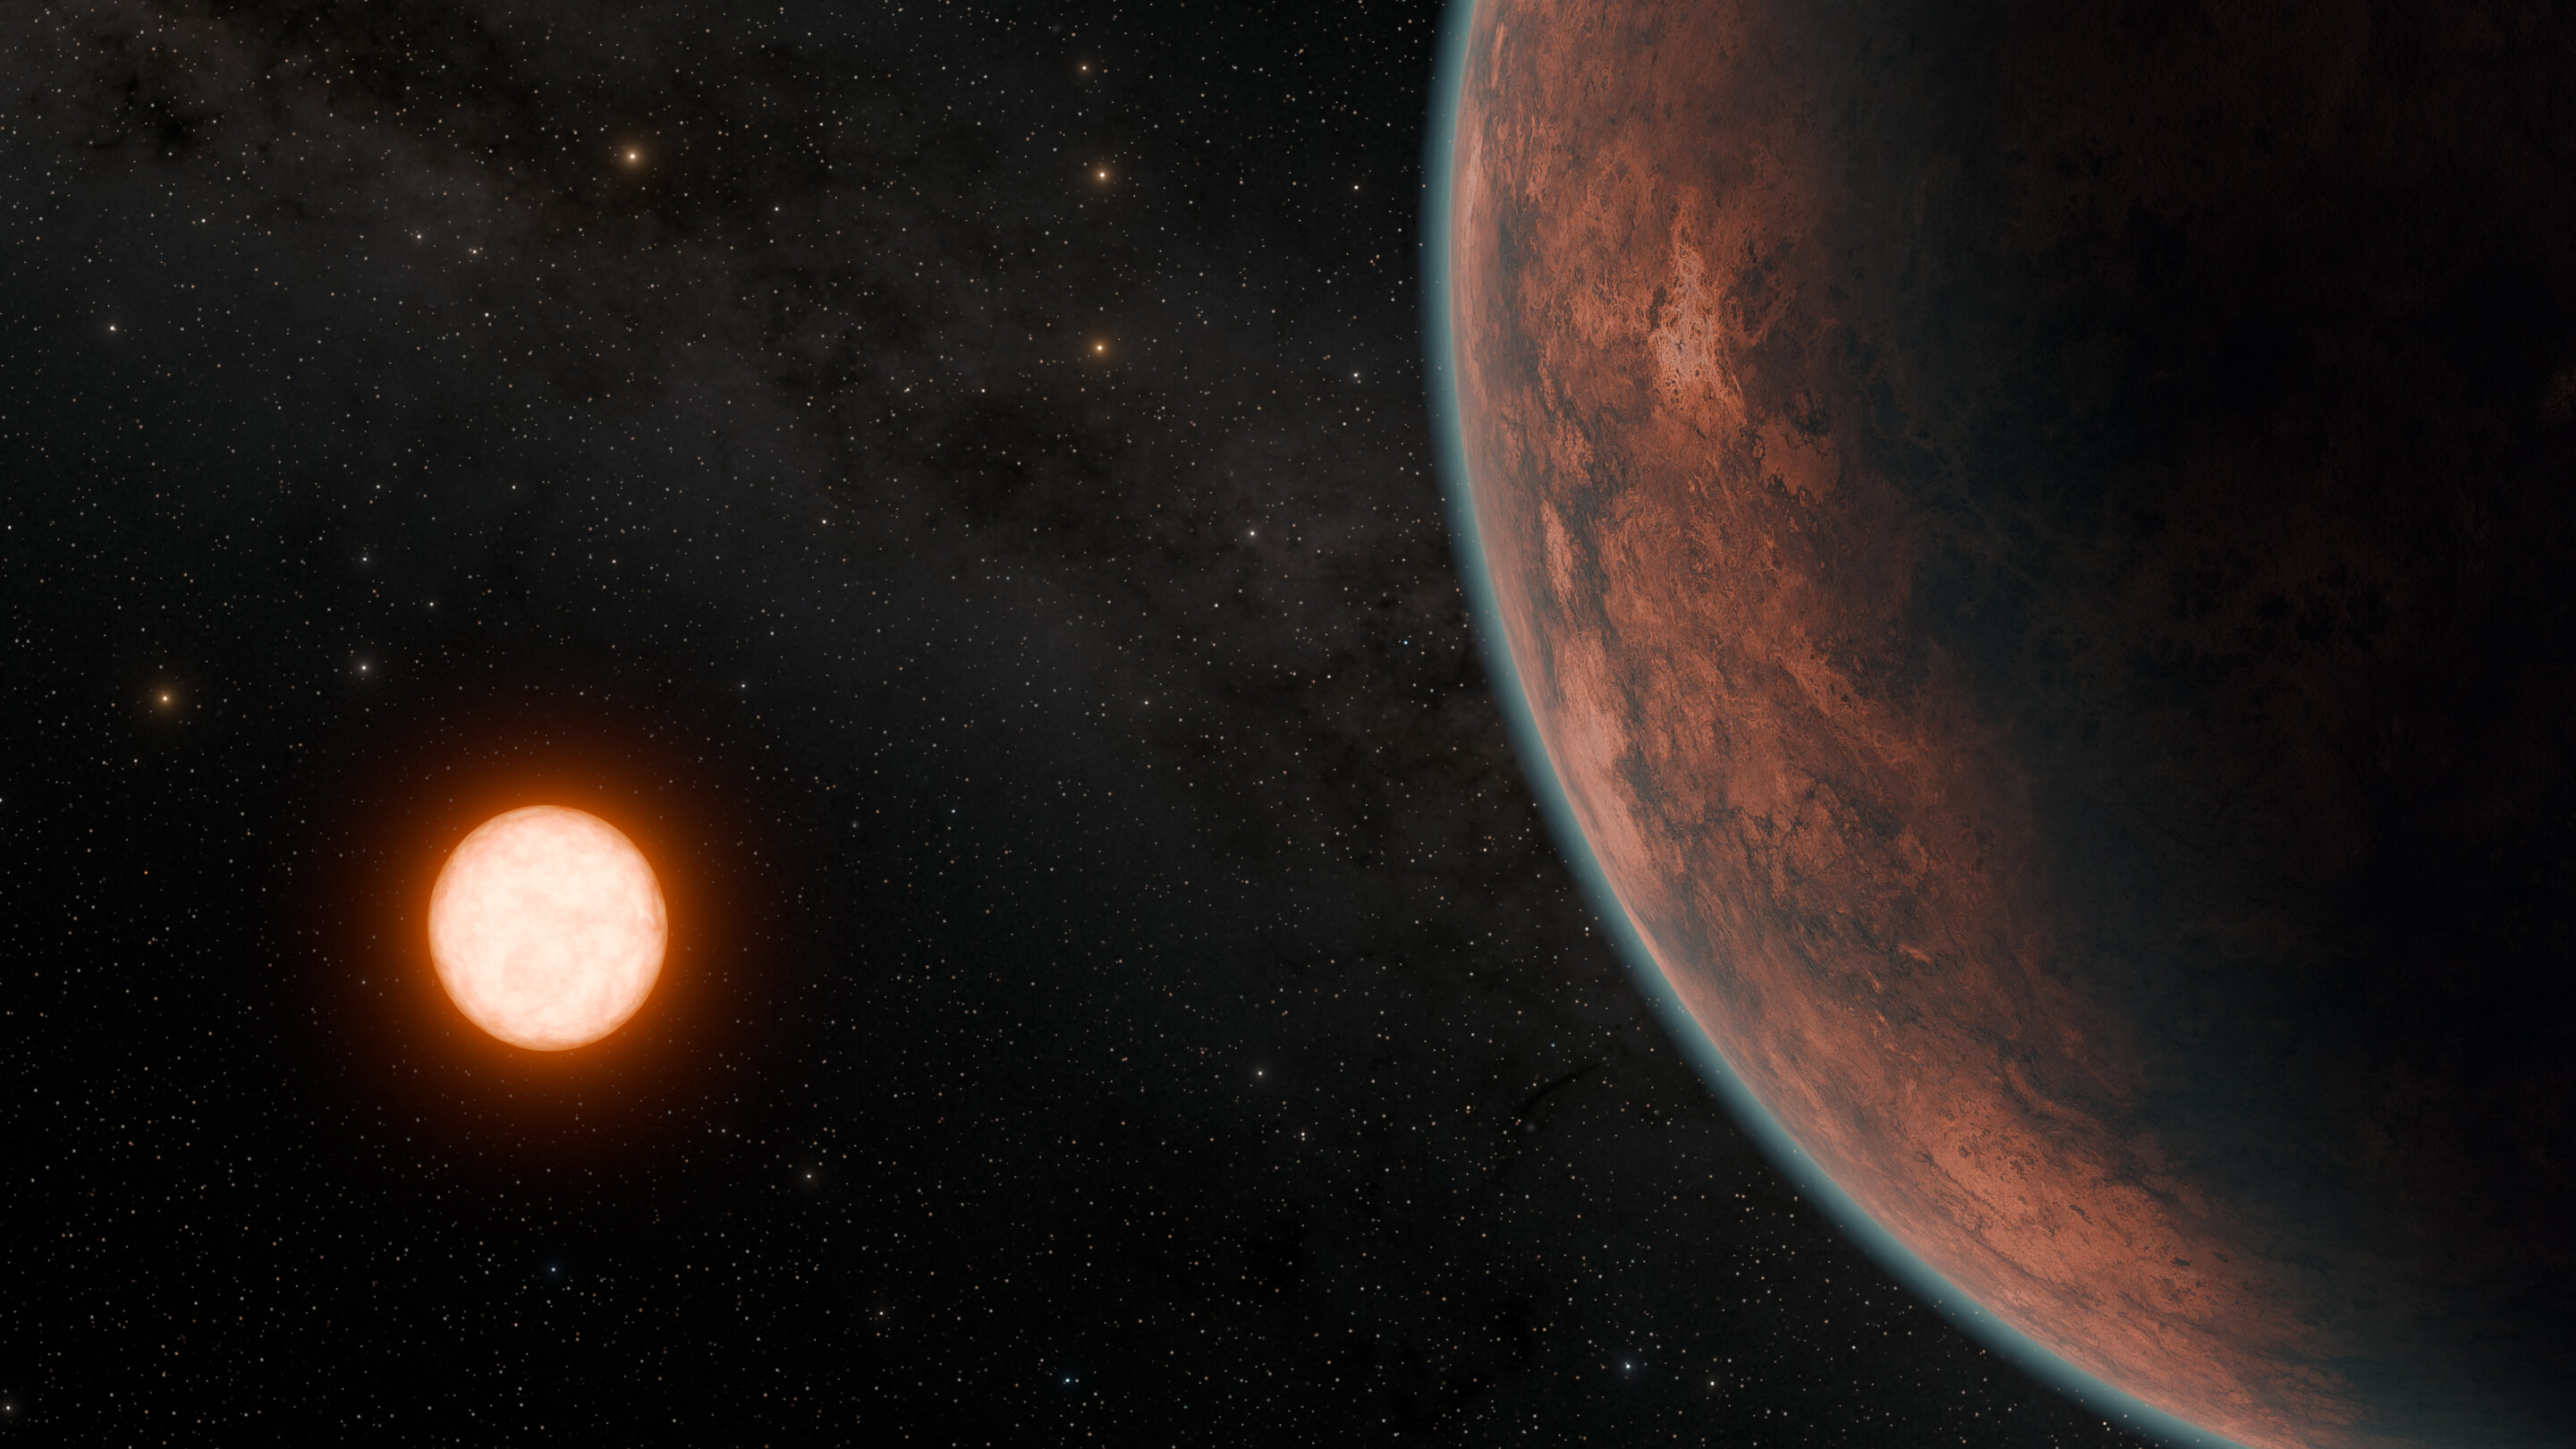 اكتشاف “كوكب الزهرة الخارجي” الذي يحتمل أن يكون صالحًا للسكن مع درجة حرارة تشبه الأرض